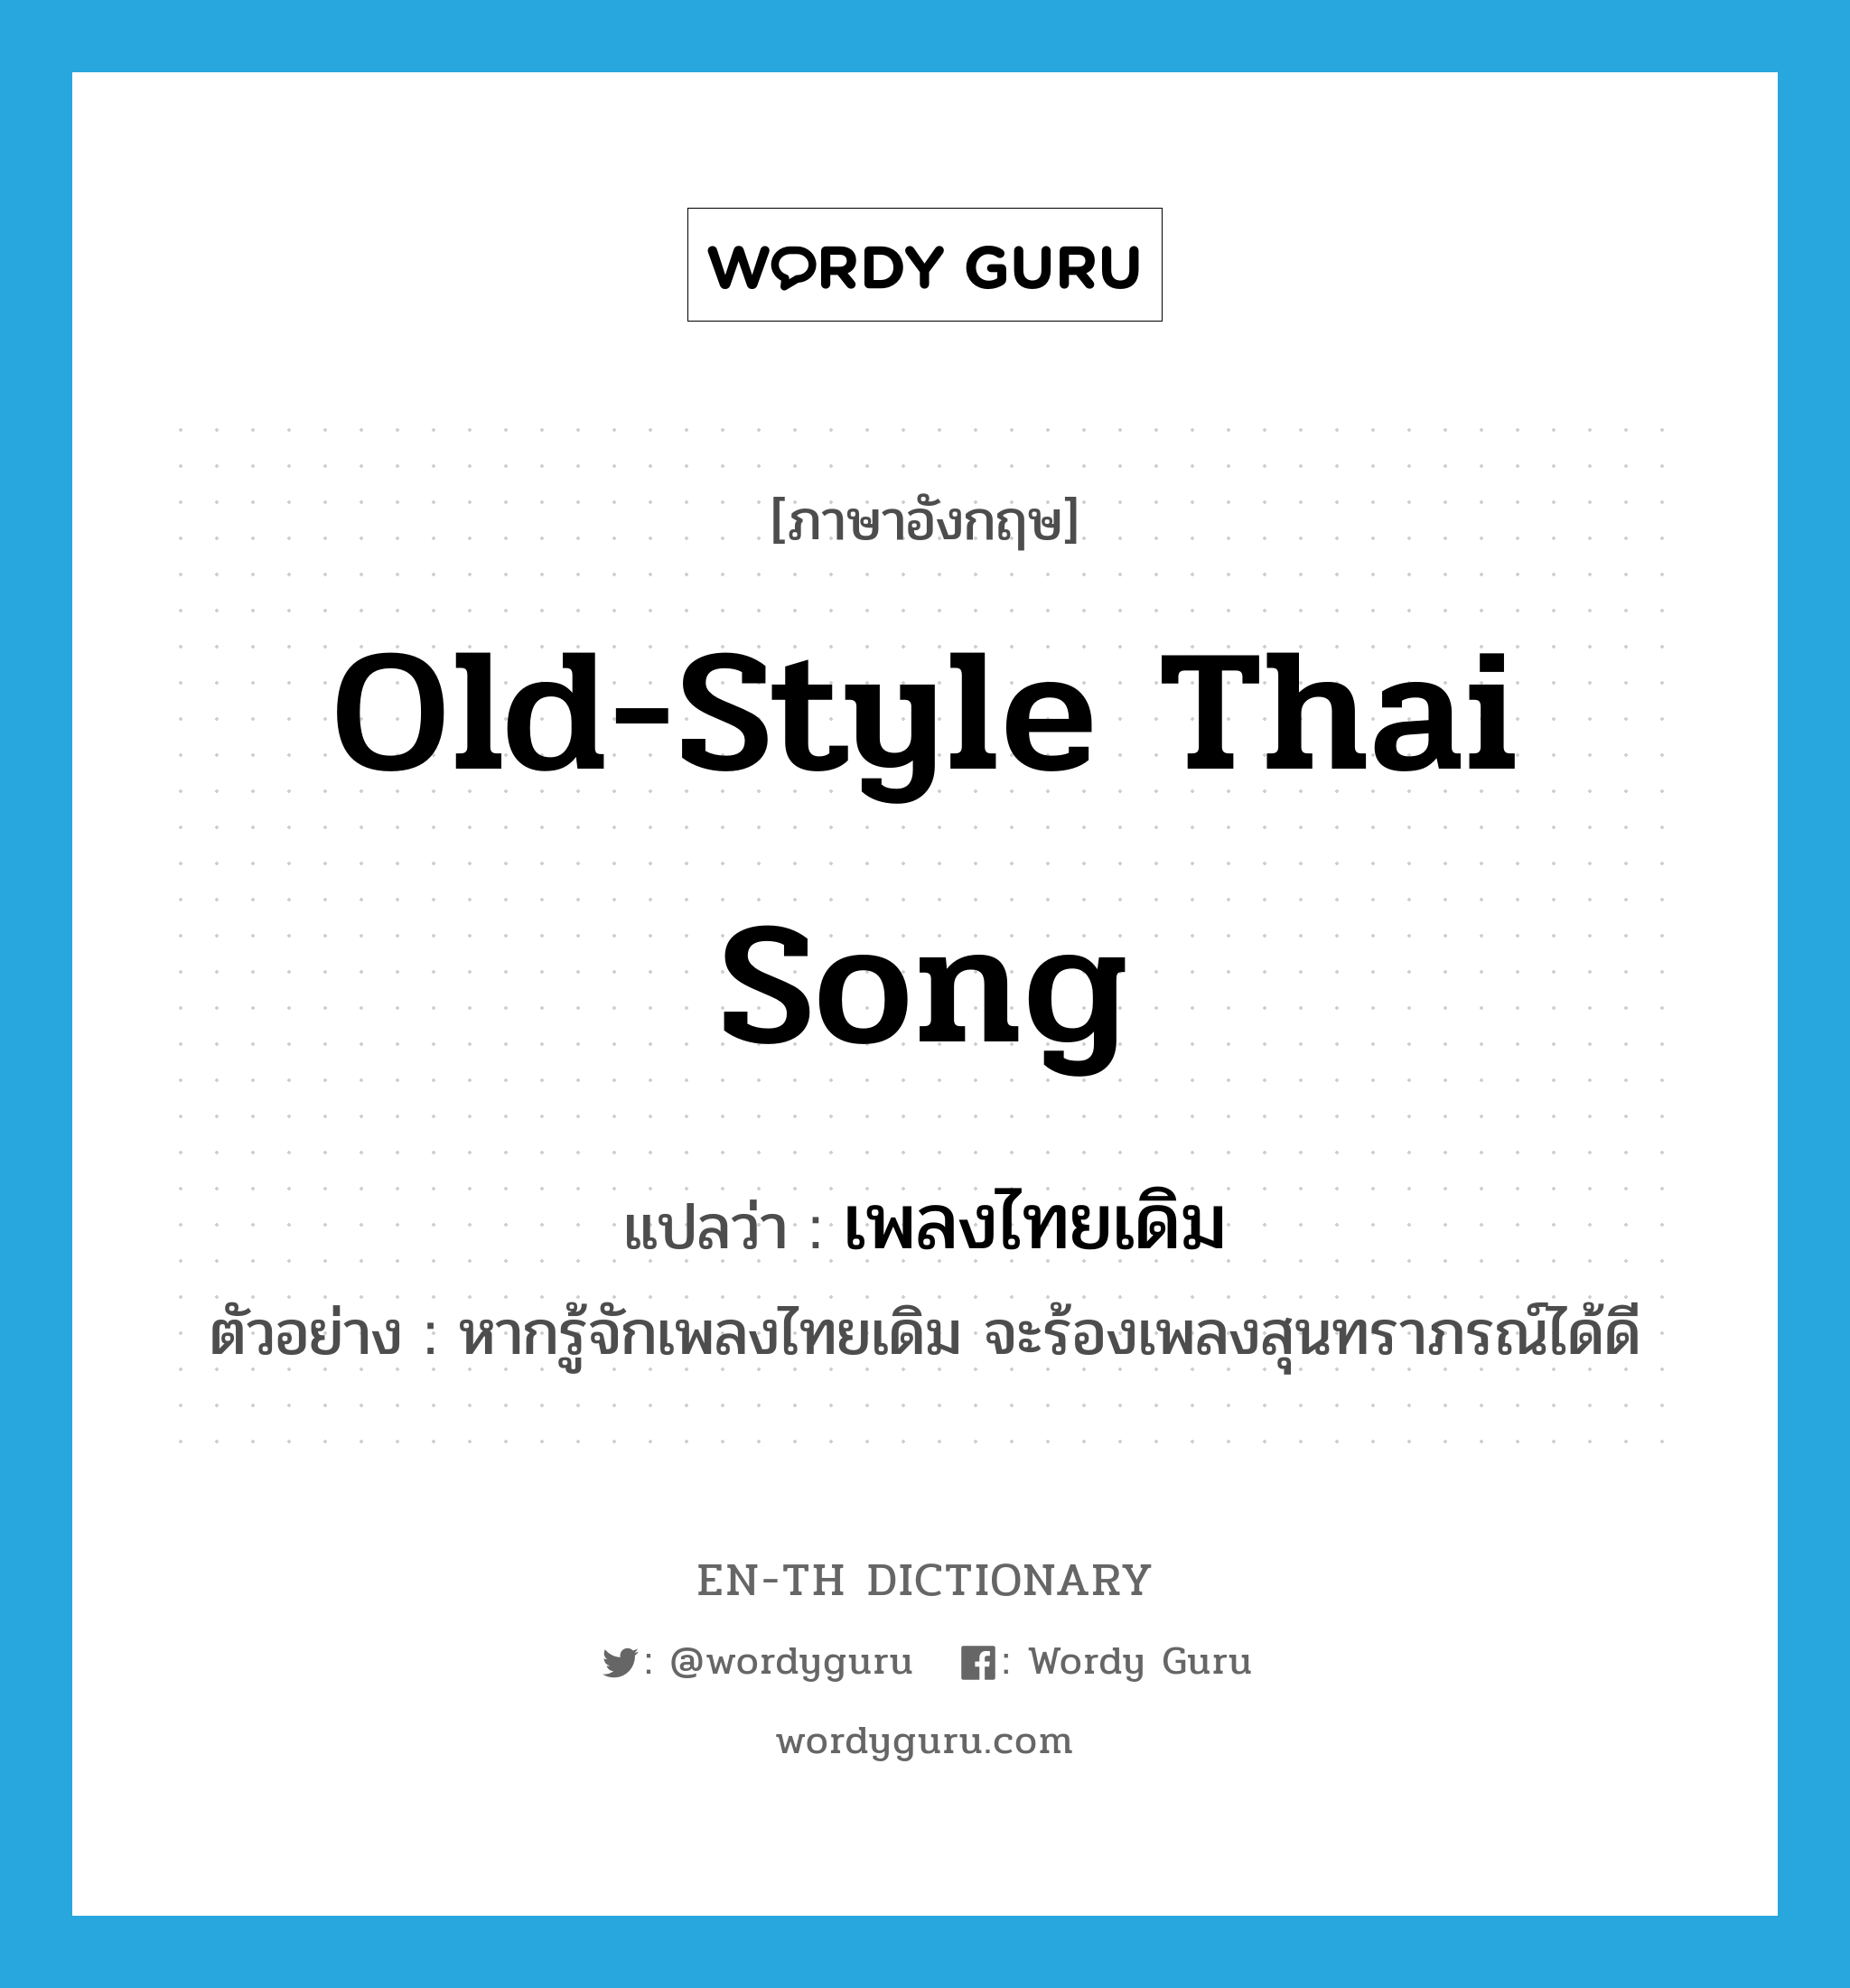 เพลงไทยเดิม ภาษาอังกฤษ?, คำศัพท์ภาษาอังกฤษ เพลงไทยเดิม แปลว่า old-style Thai song ประเภท N ตัวอย่าง หากรู้จักเพลงไทยเดิม จะร้องเพลงสุนทราภรณ์ได้ดี หมวด N